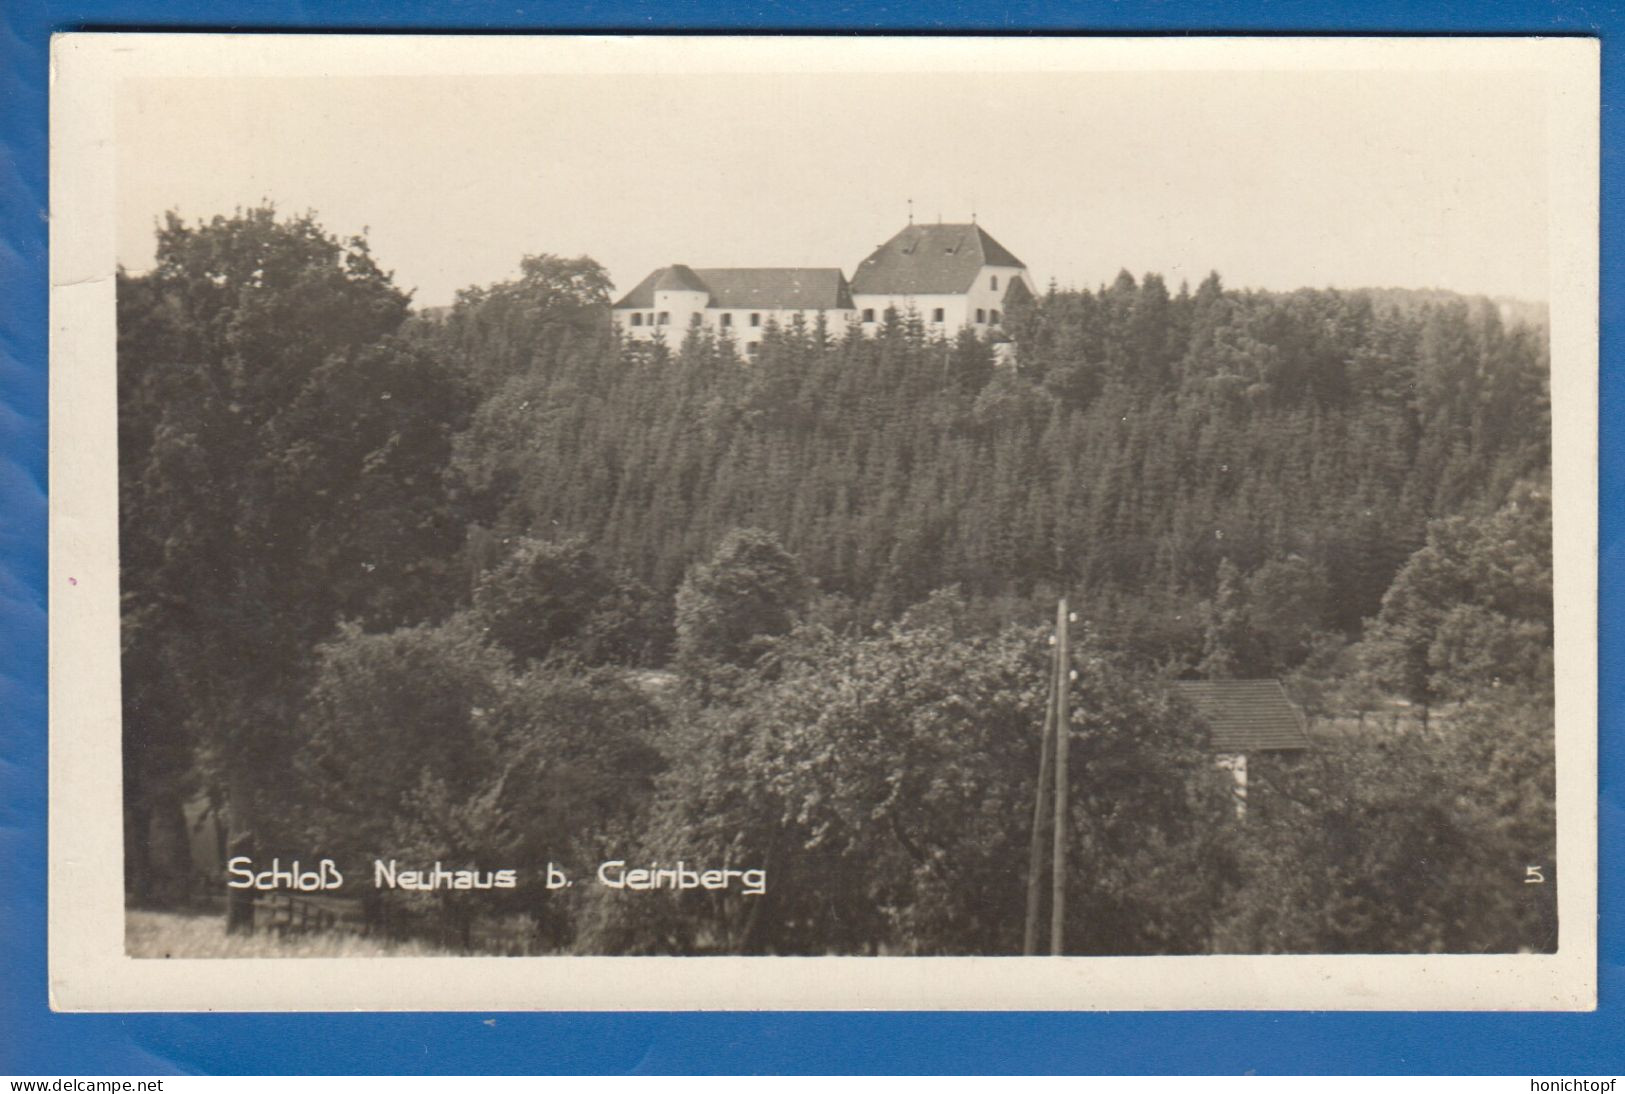 Österreich; Geinberg; Schloß Neuhaus; Ried Im Innkreis; 1932 - Ried Im Innkreis